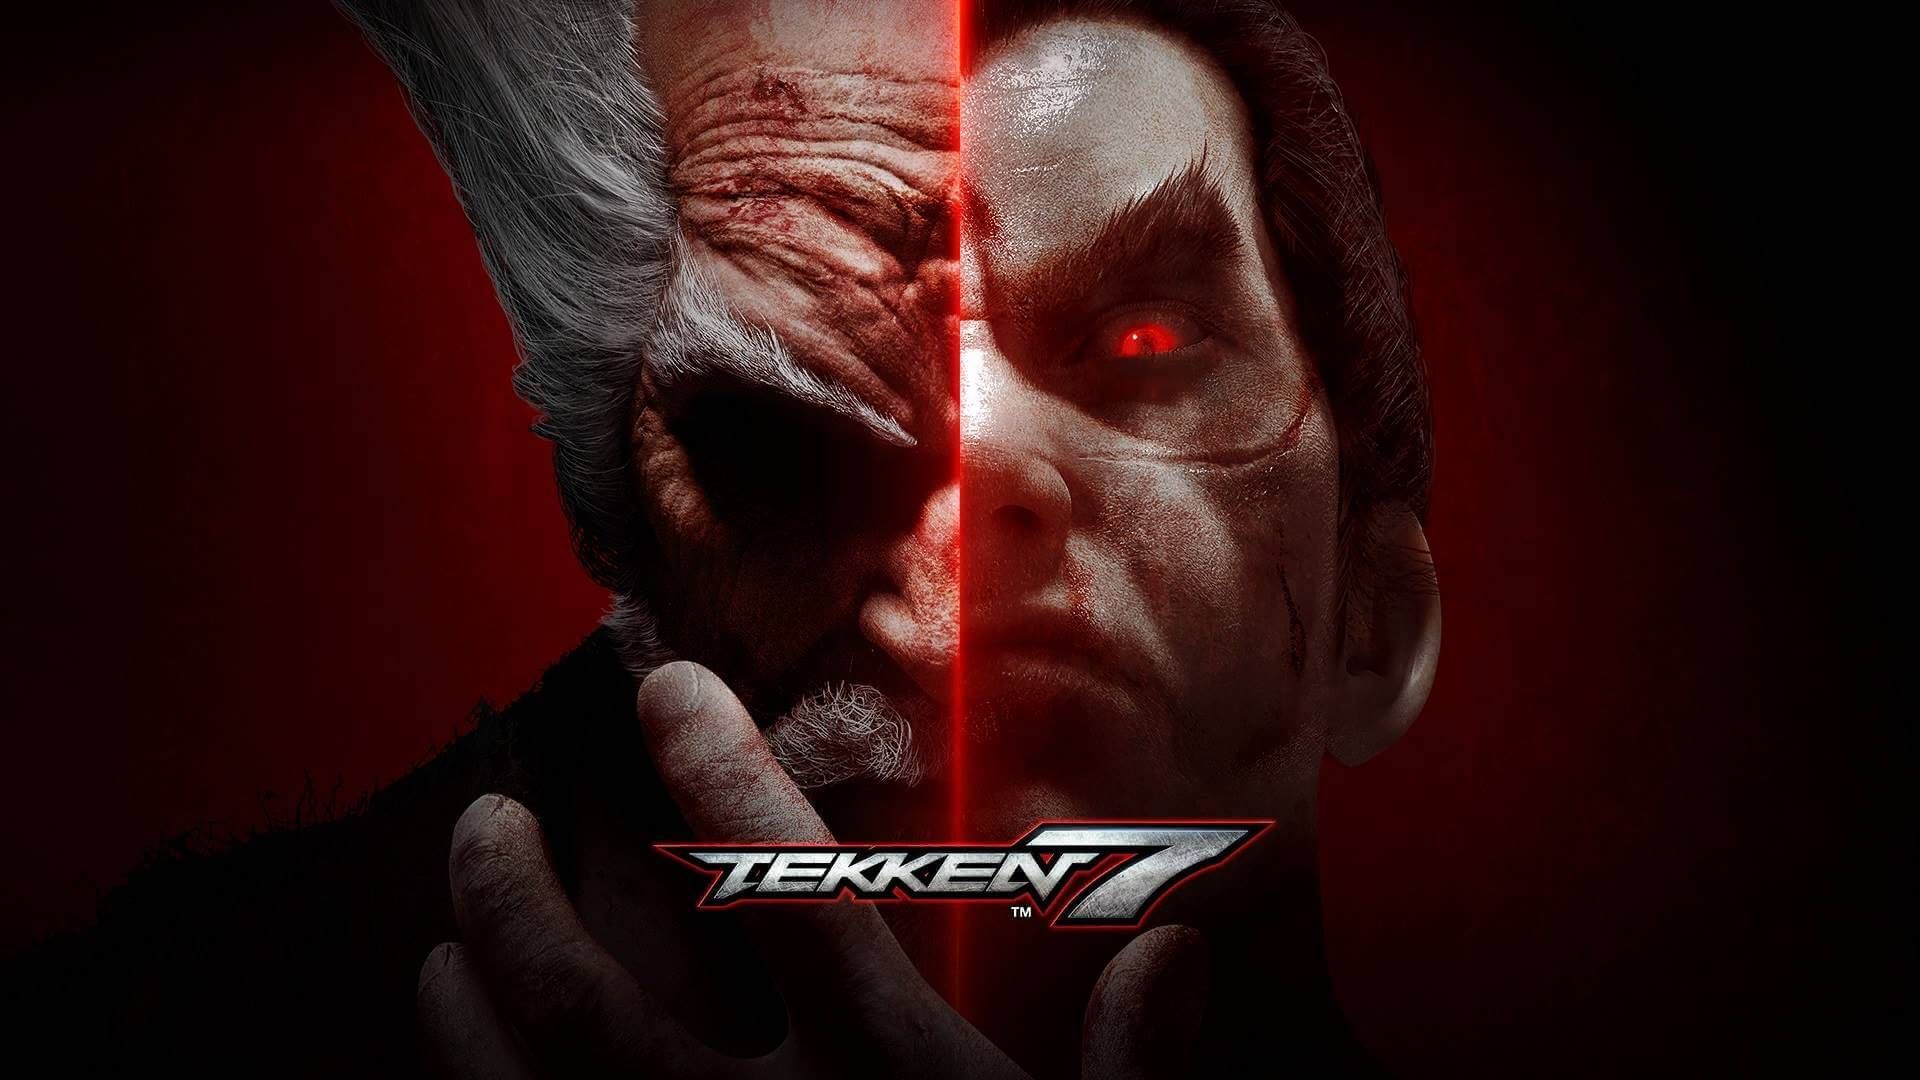 Big Tekken 7 Reveal is on the Way